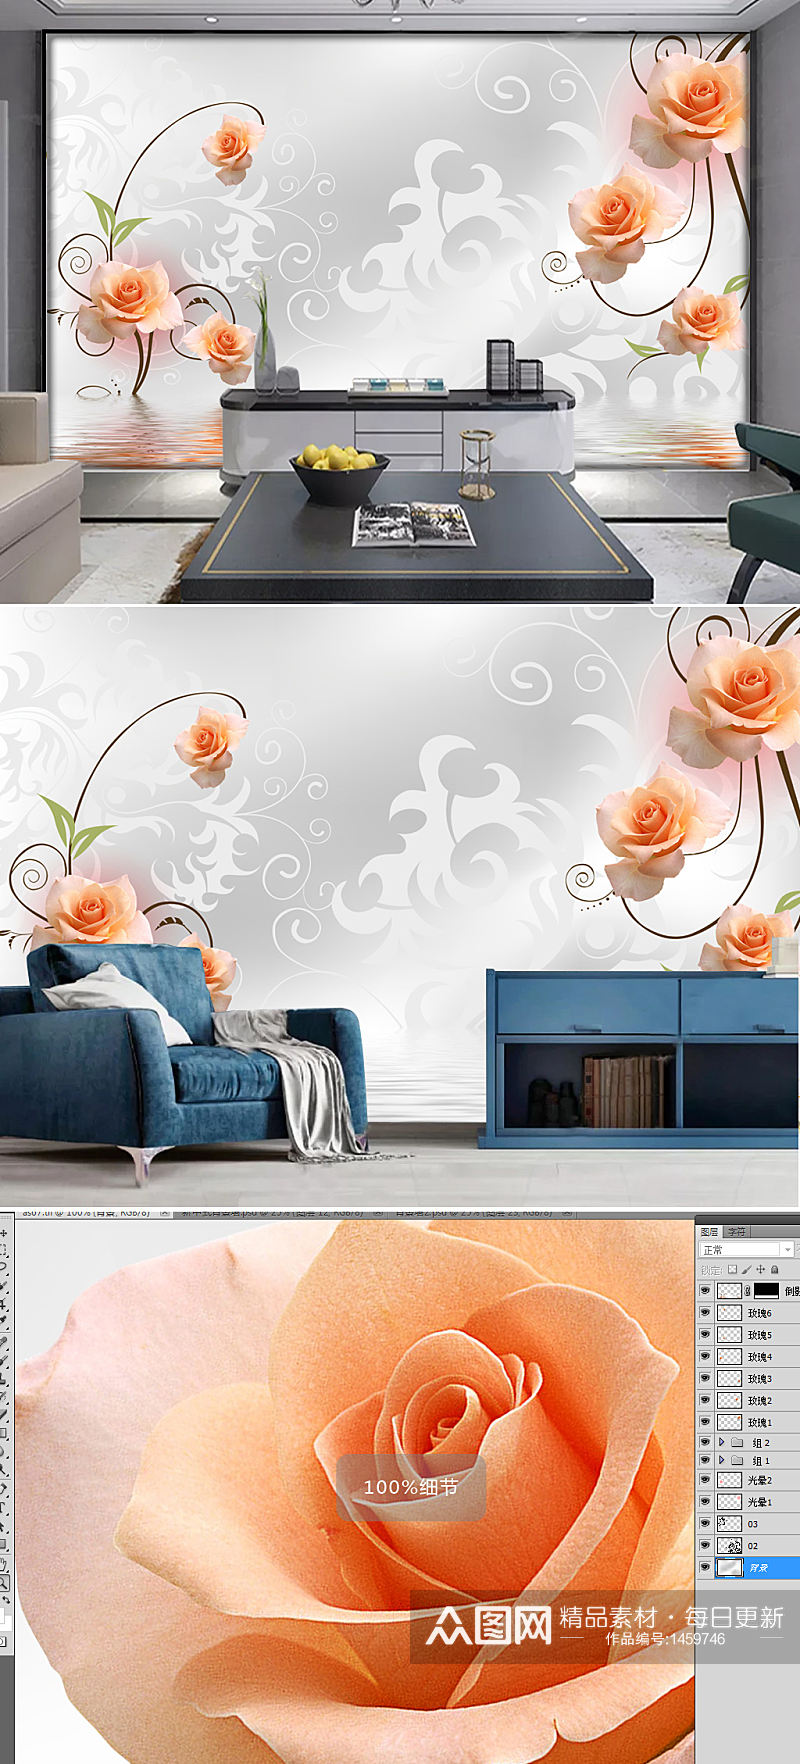 素雅3d立体花卉倒影背景墙壁画素材